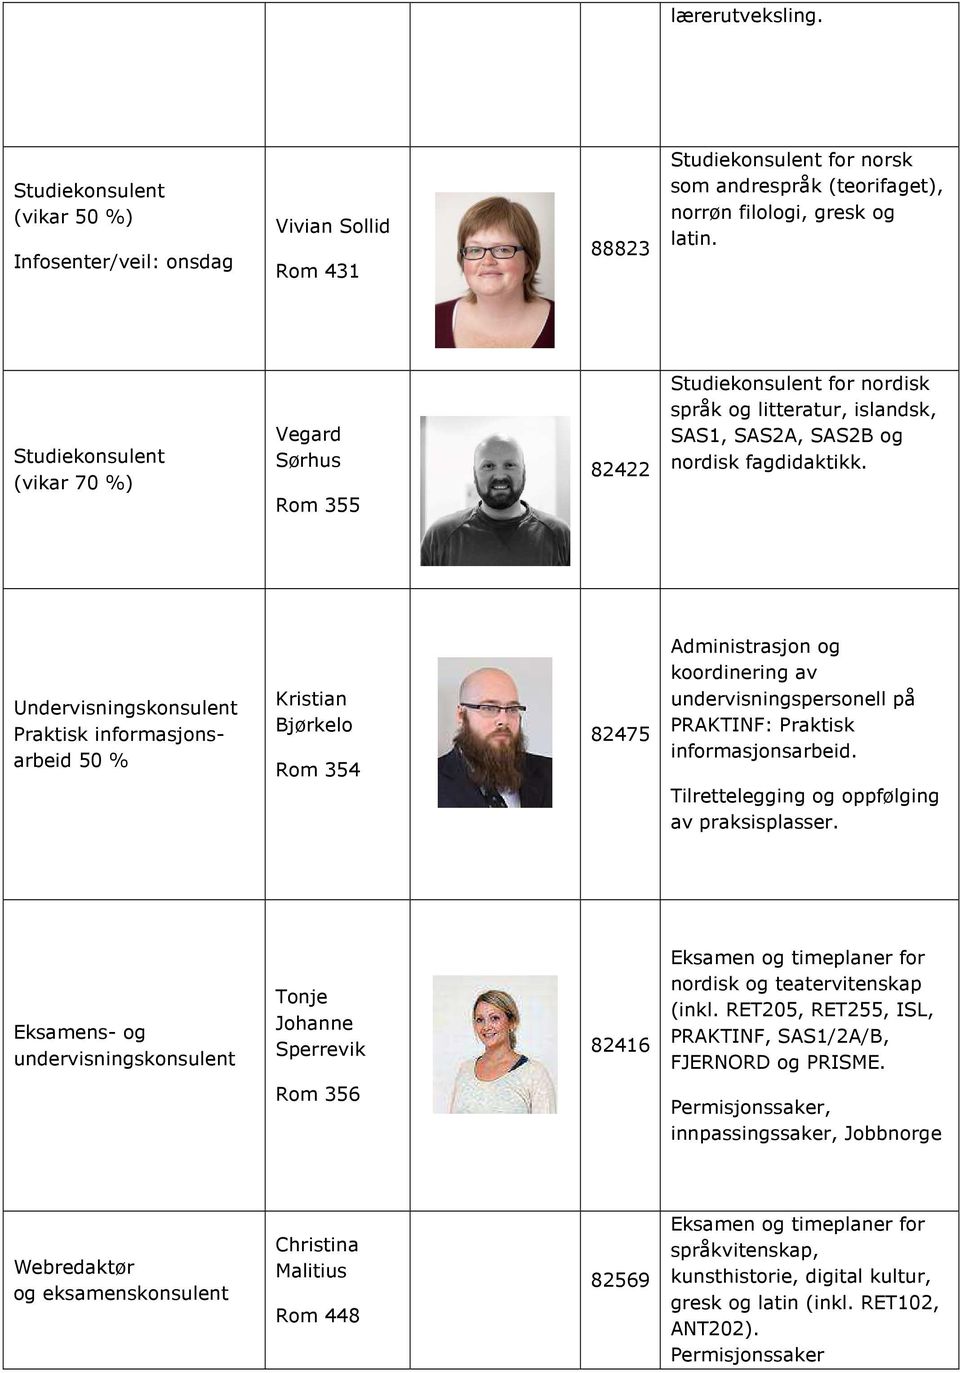 Undervisningskonsulent Praktisk informasjonsarbeid 50 % Kristian Bjørkelo Rom 354 82475 Administrasjon og koordinering av undervisningspersonell på PRAKTINF: Praktisk informasjonsarbeid.